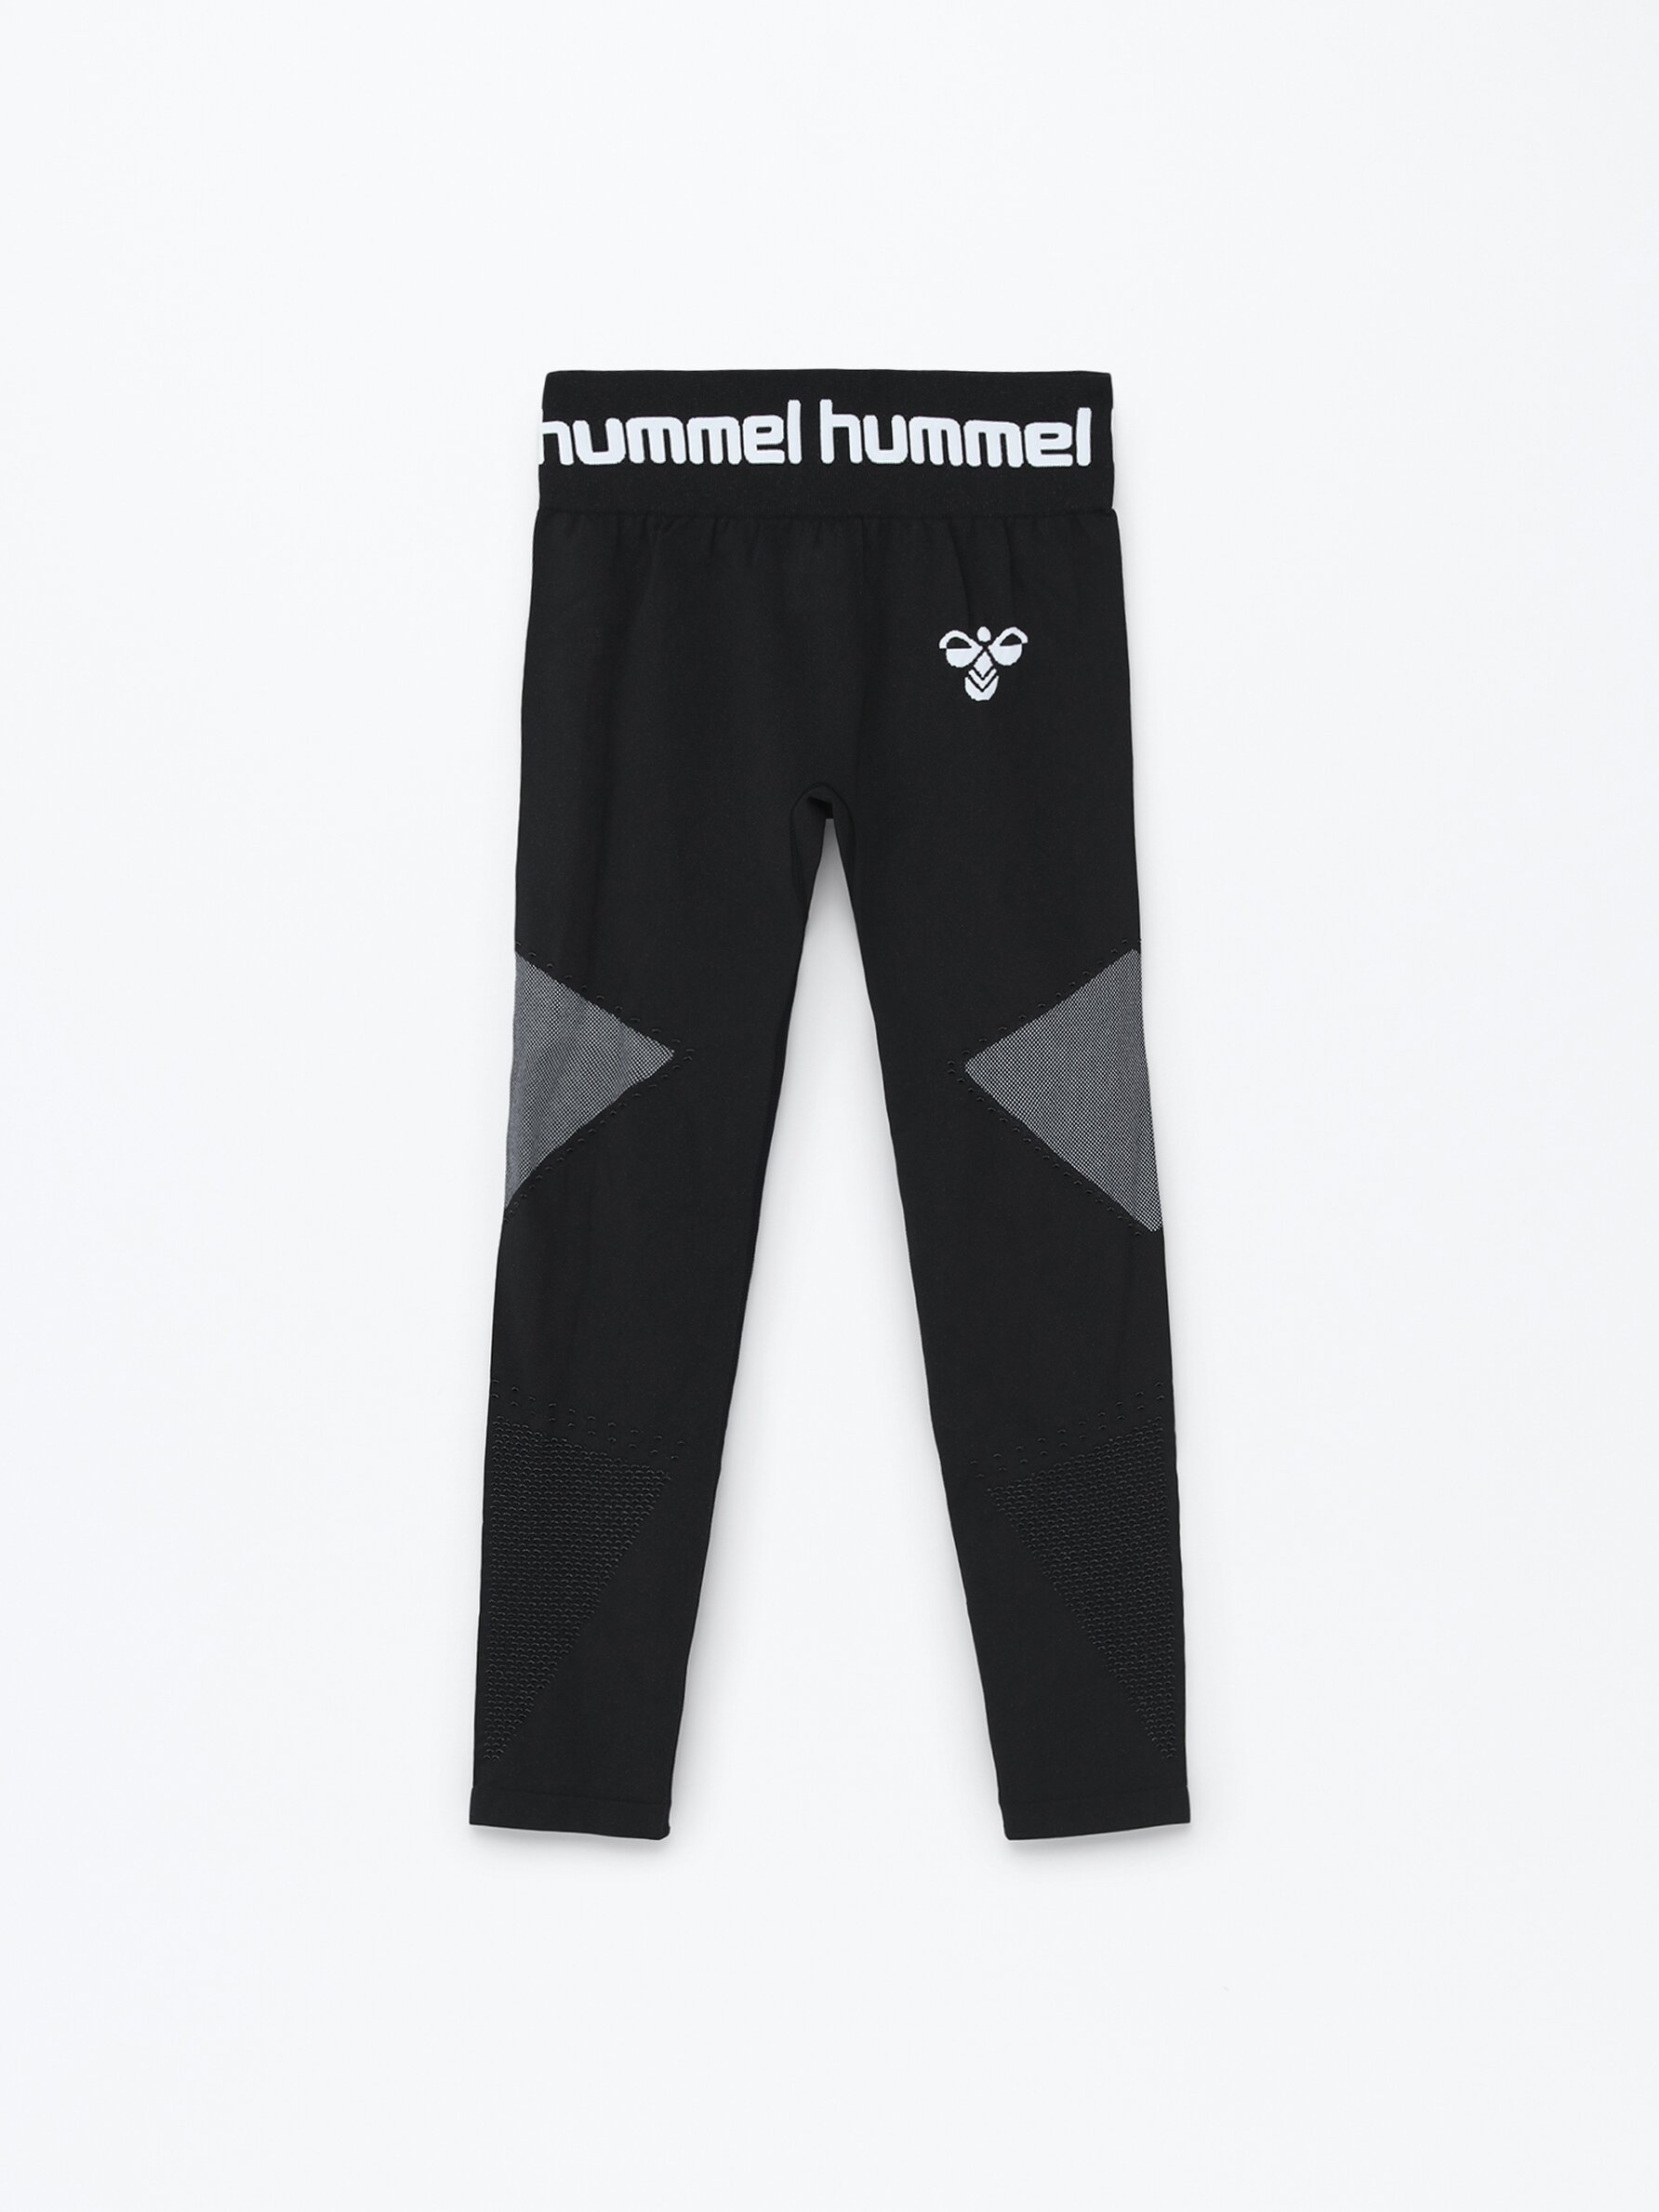 Seamless Hummel x Bras Woman - - Sportswear - Sports Lefties | Turkey leggings - CLOTHING - Lefties